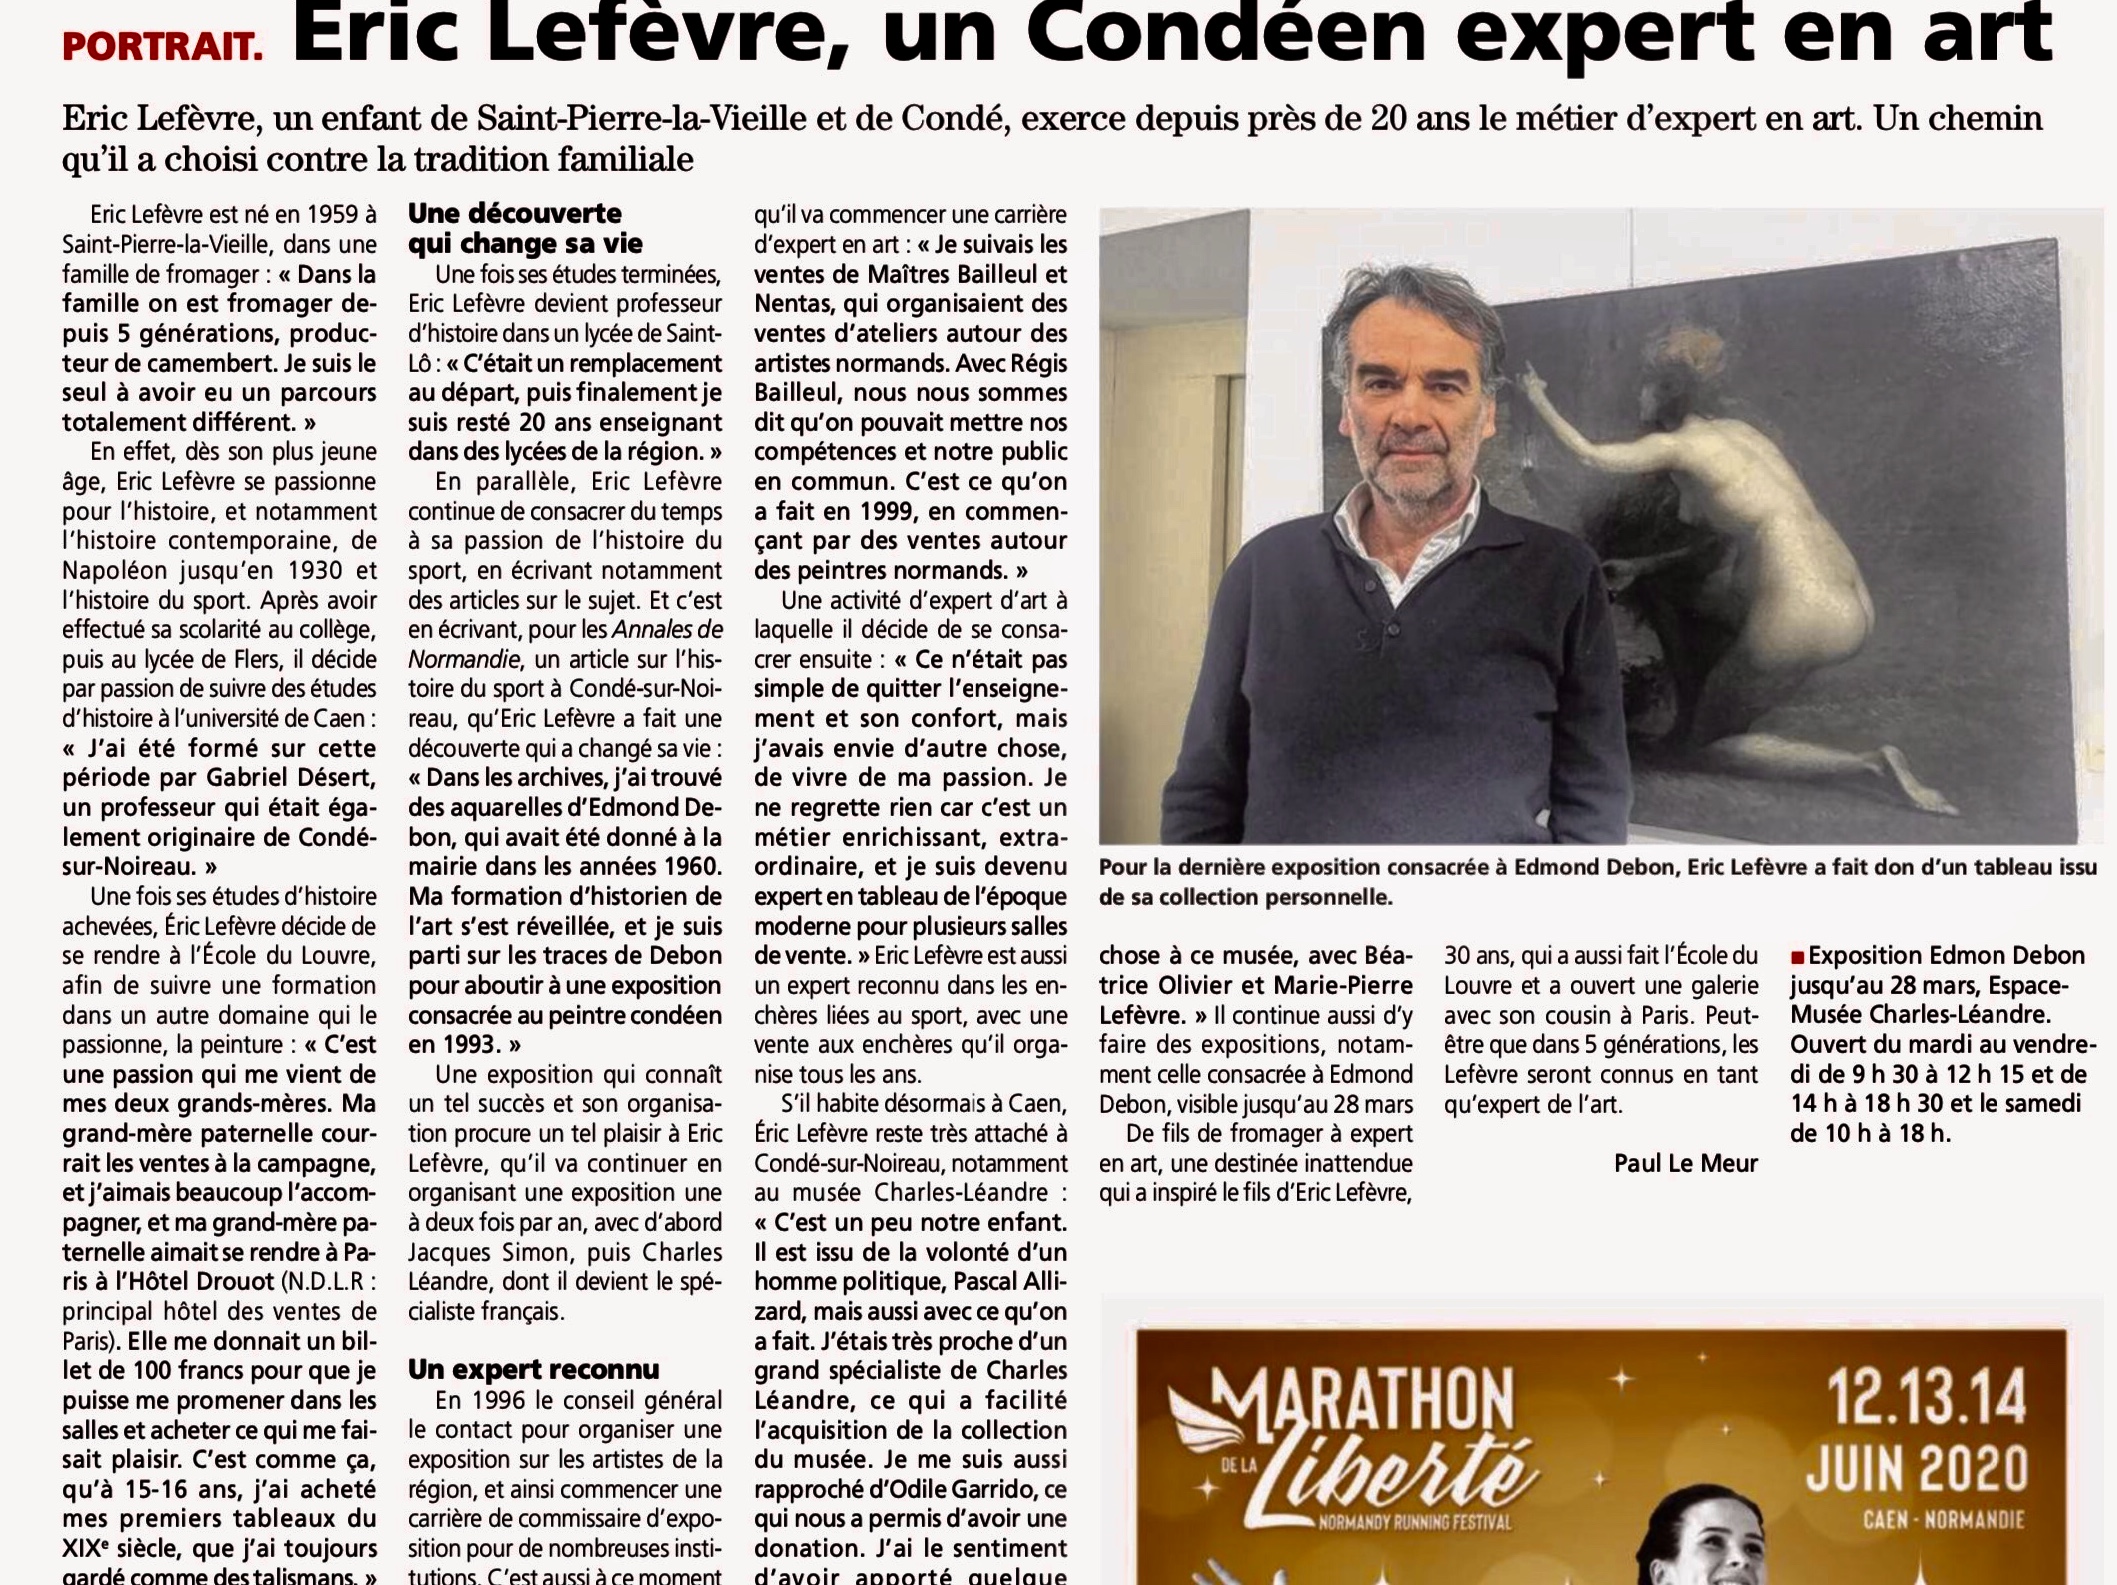 Article de L’Orne Combattante du jeudi 23 janvier 2020 « Eric Lefèvre, un Condéen expert en art » 